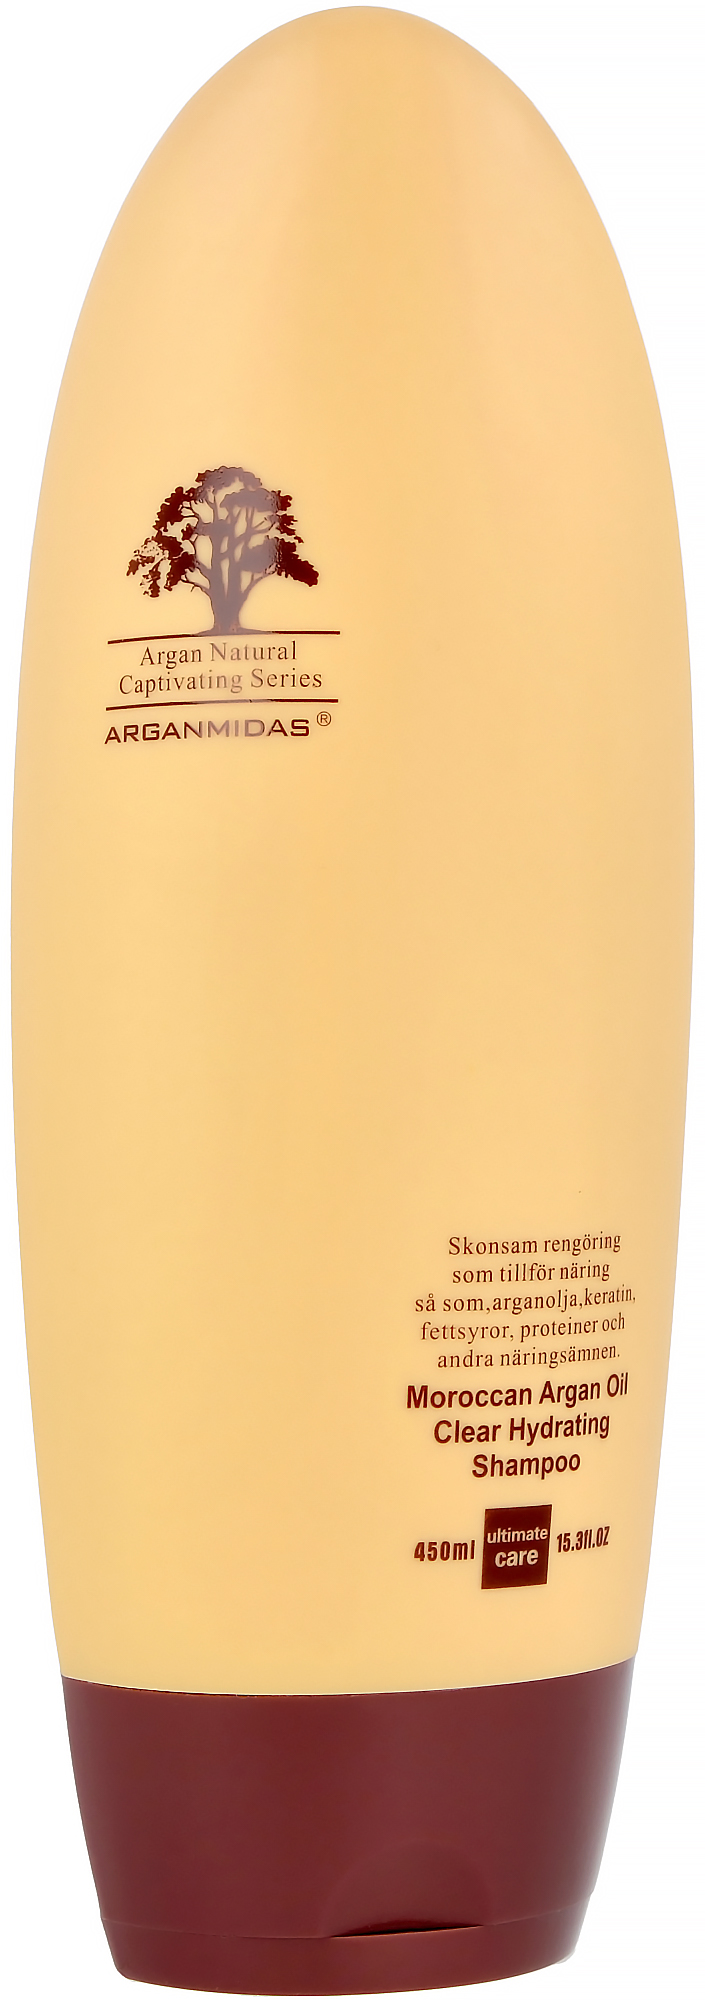 Arganmidas Clear Hydrating Shampoo 450ml